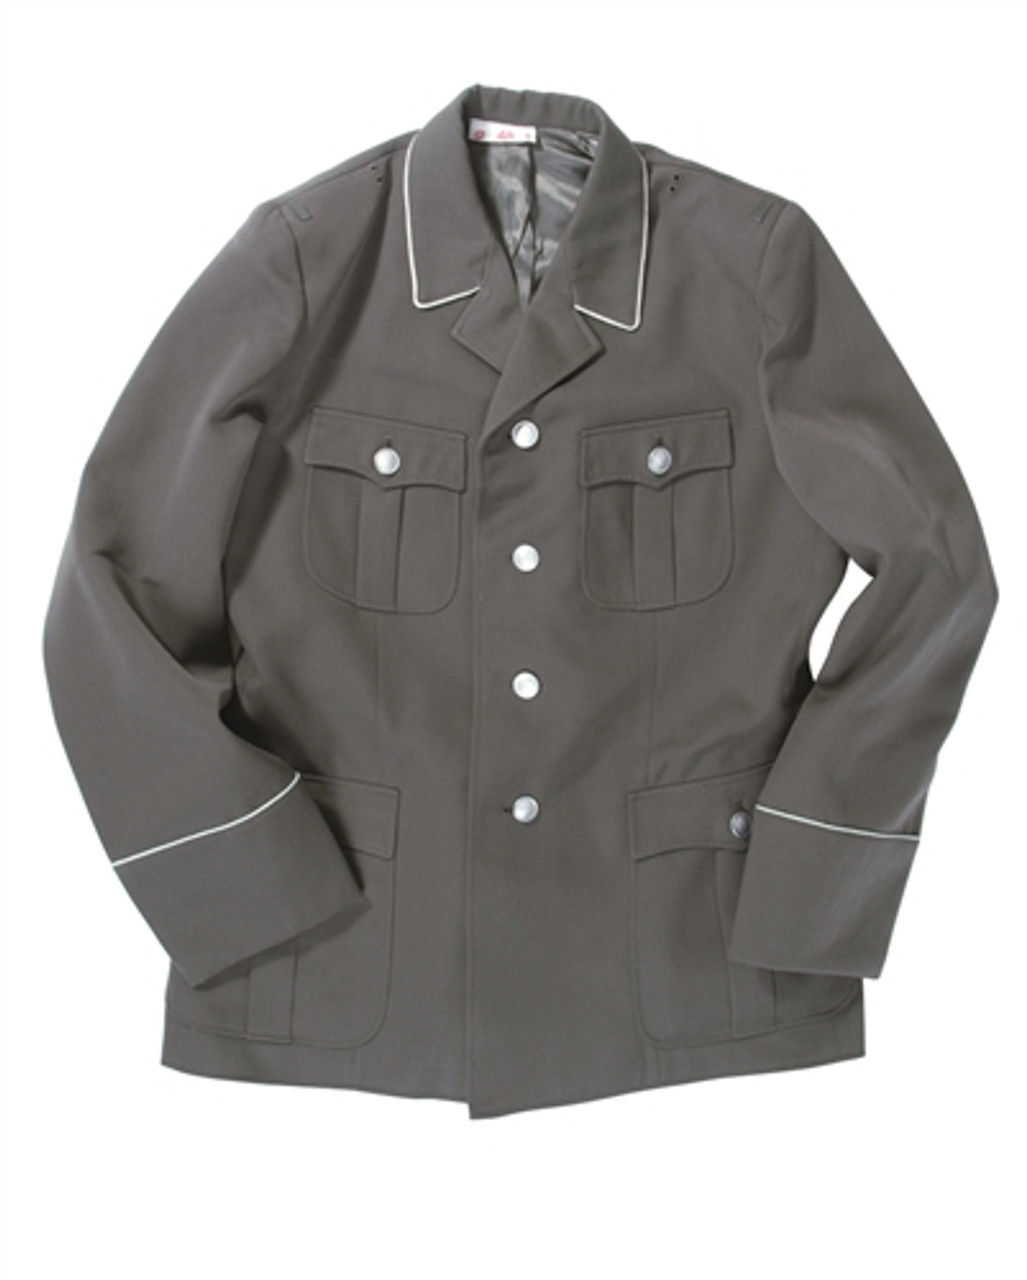 East German Army Uniform Jacket from Hessen Surplus